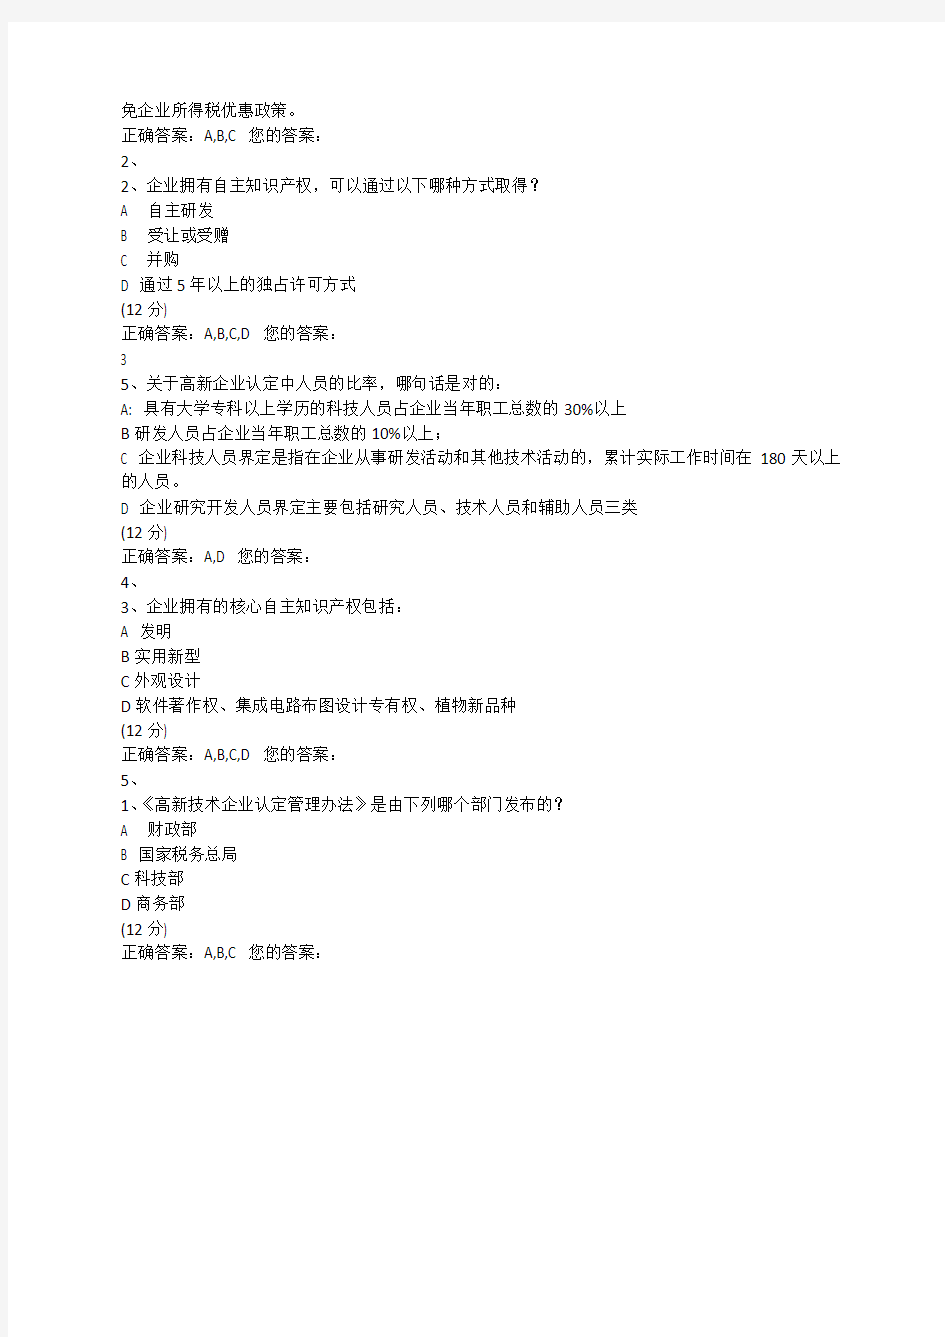 中国注册税务师协会网校2013课后练习详细